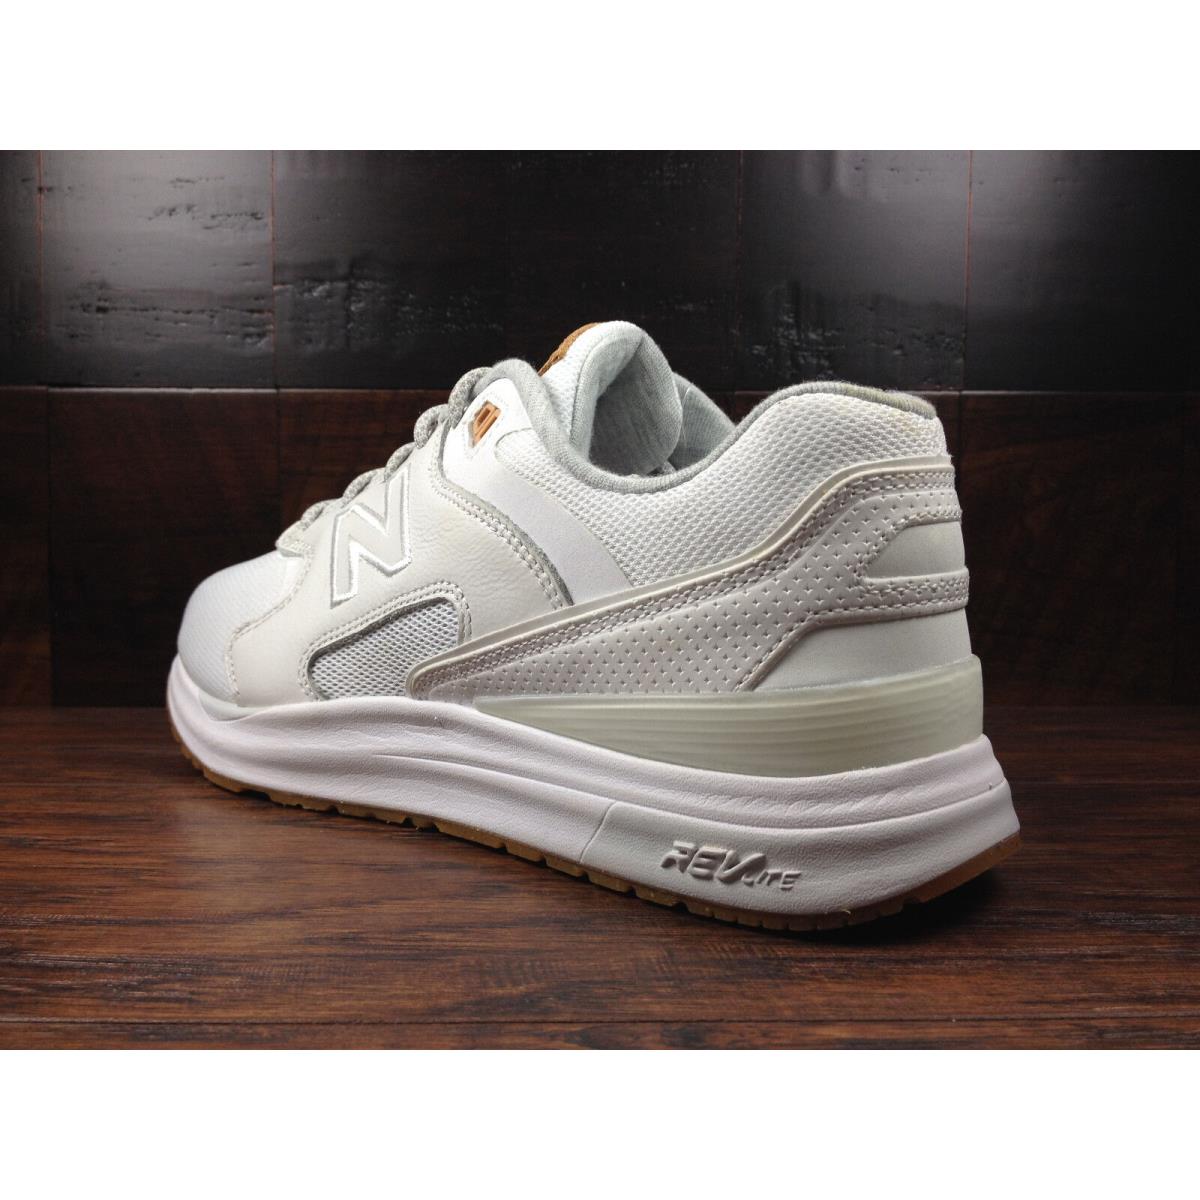 New Balance shoes  - White / Tan 2